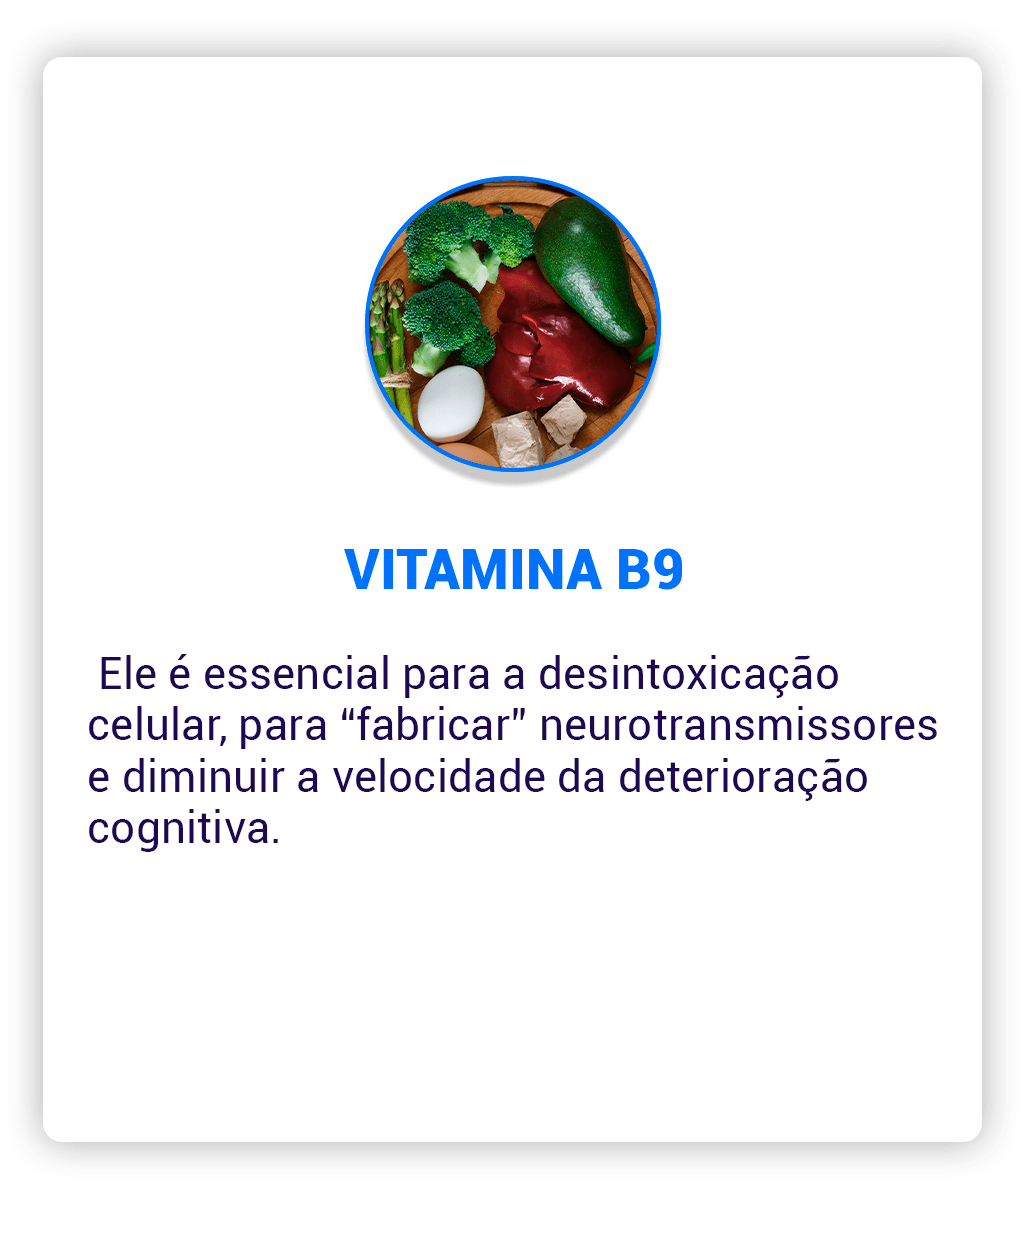 Vitamina-B9-Ac-min.png